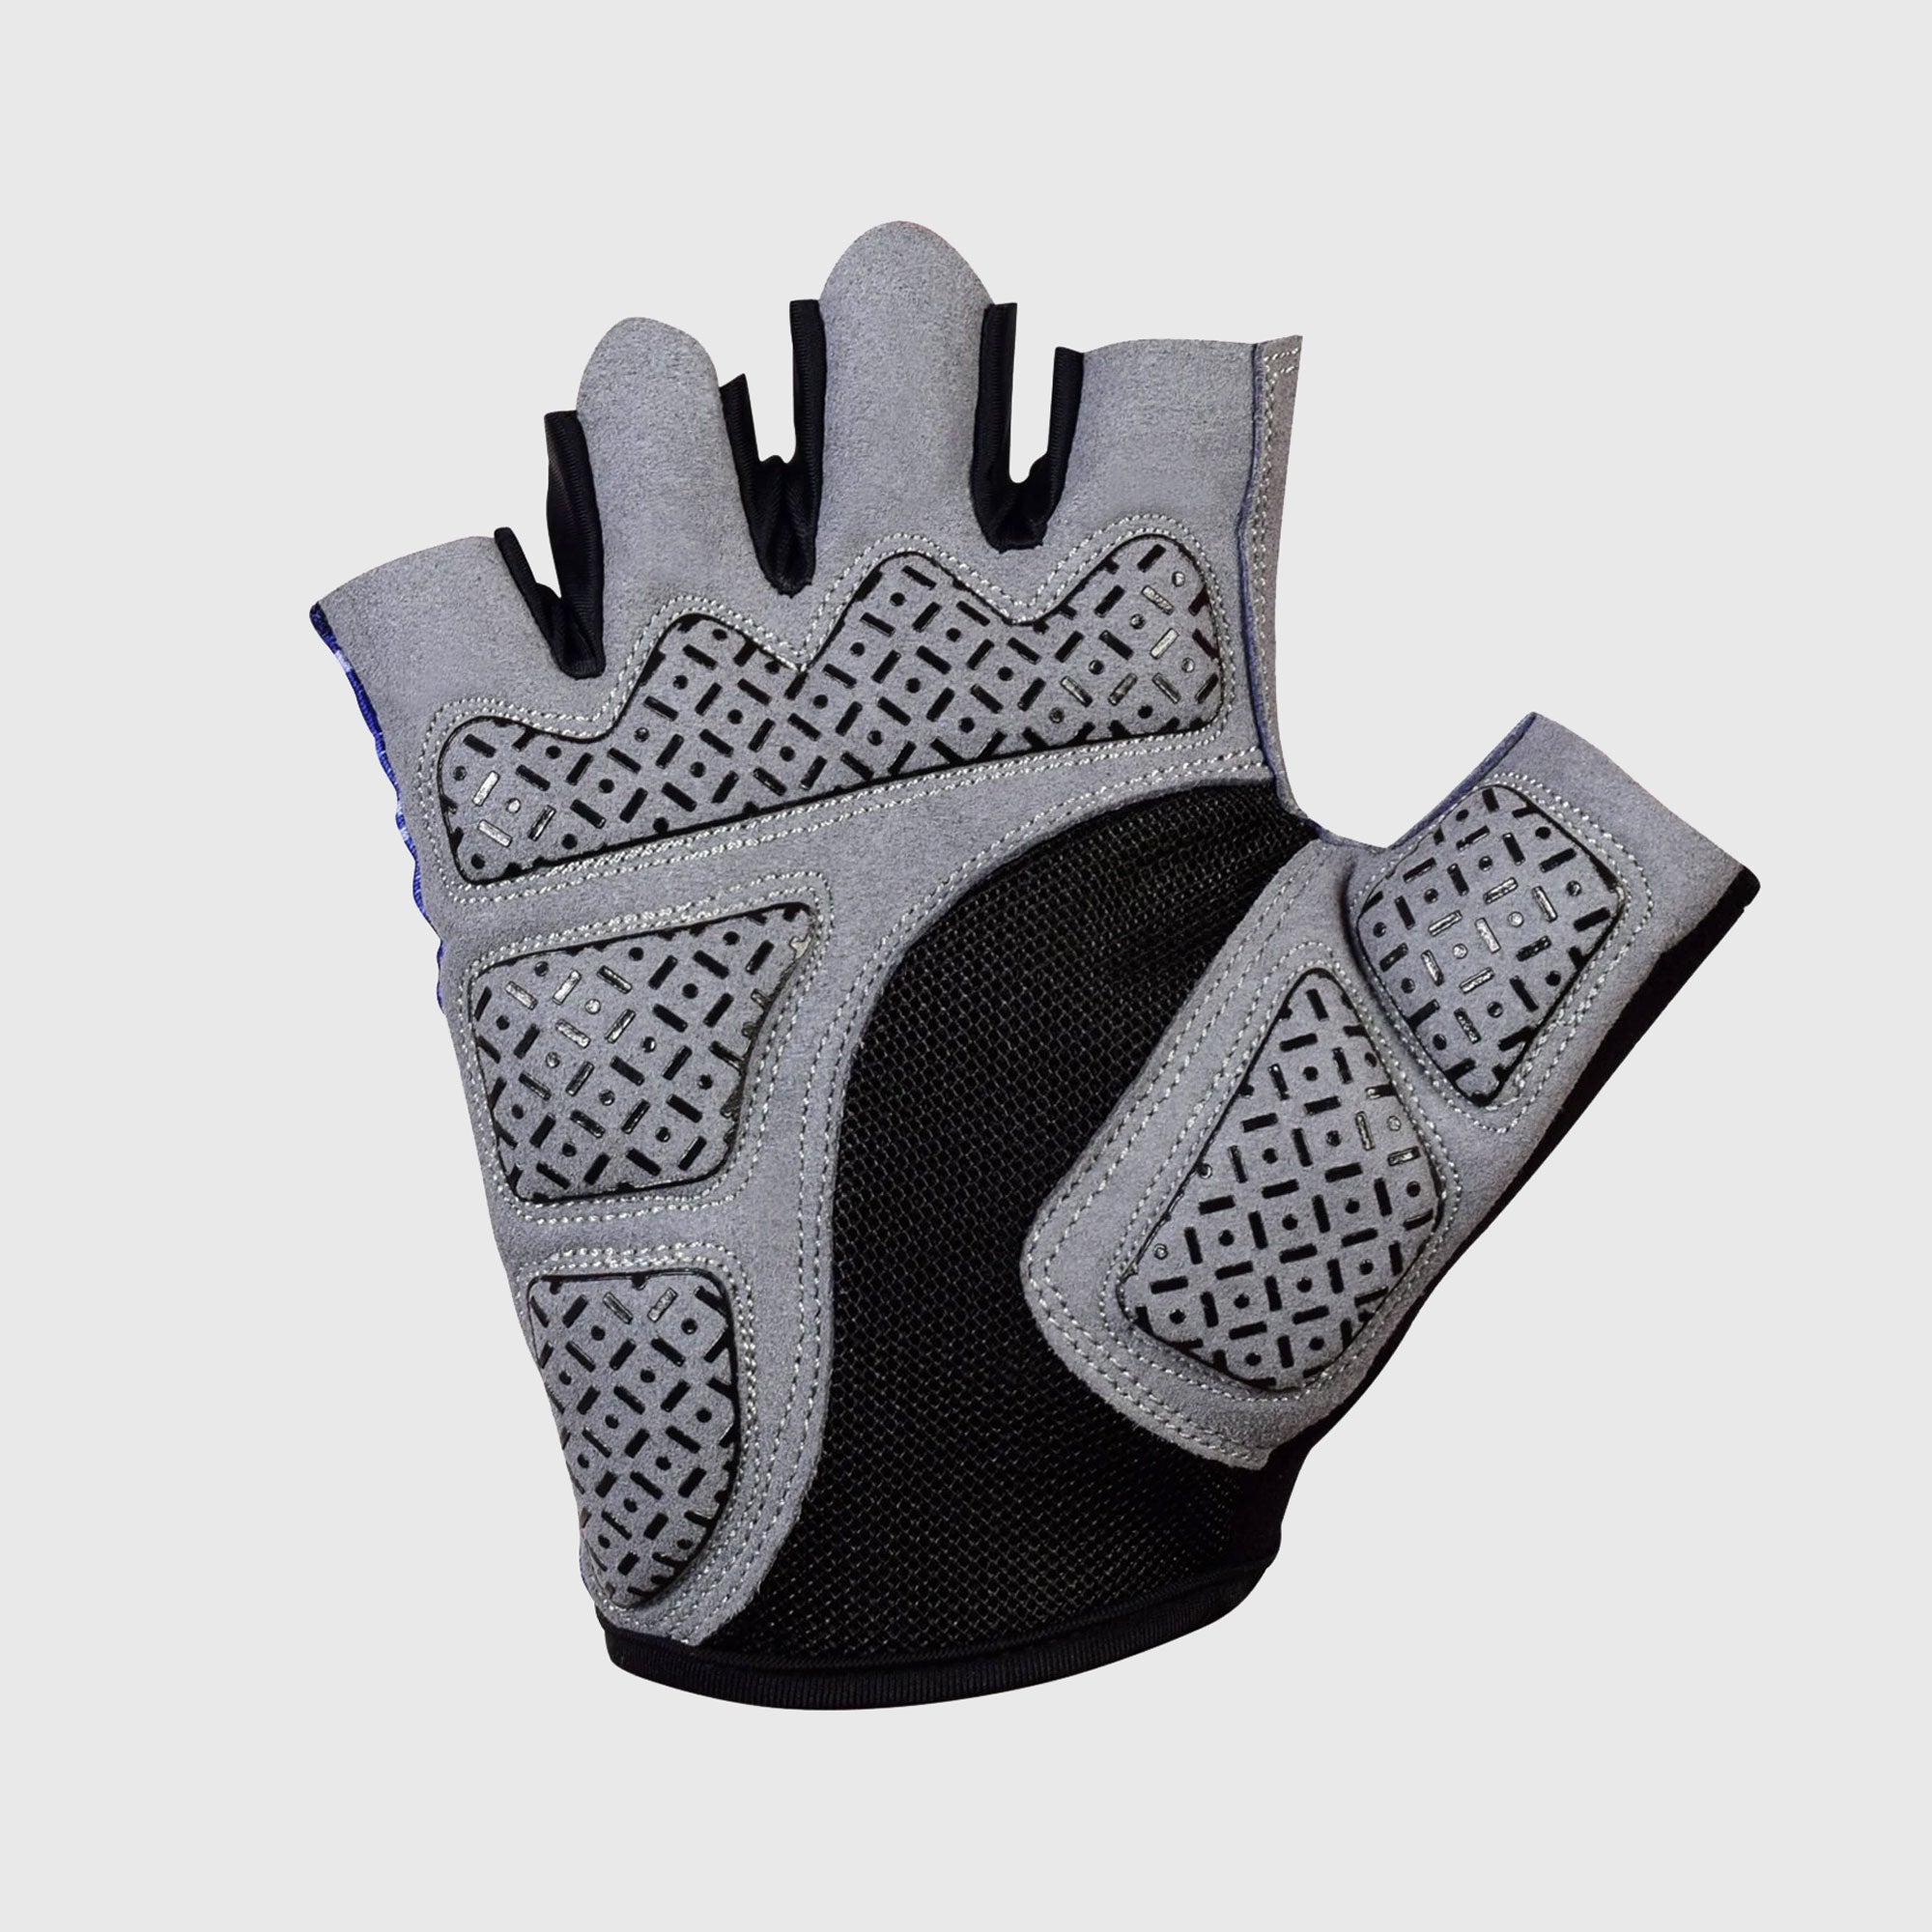 Fdx Navy Blue Short Finger Cycling Gloves for Summer MTB Road Bike fingerless, anti slip & Breathable - All Day